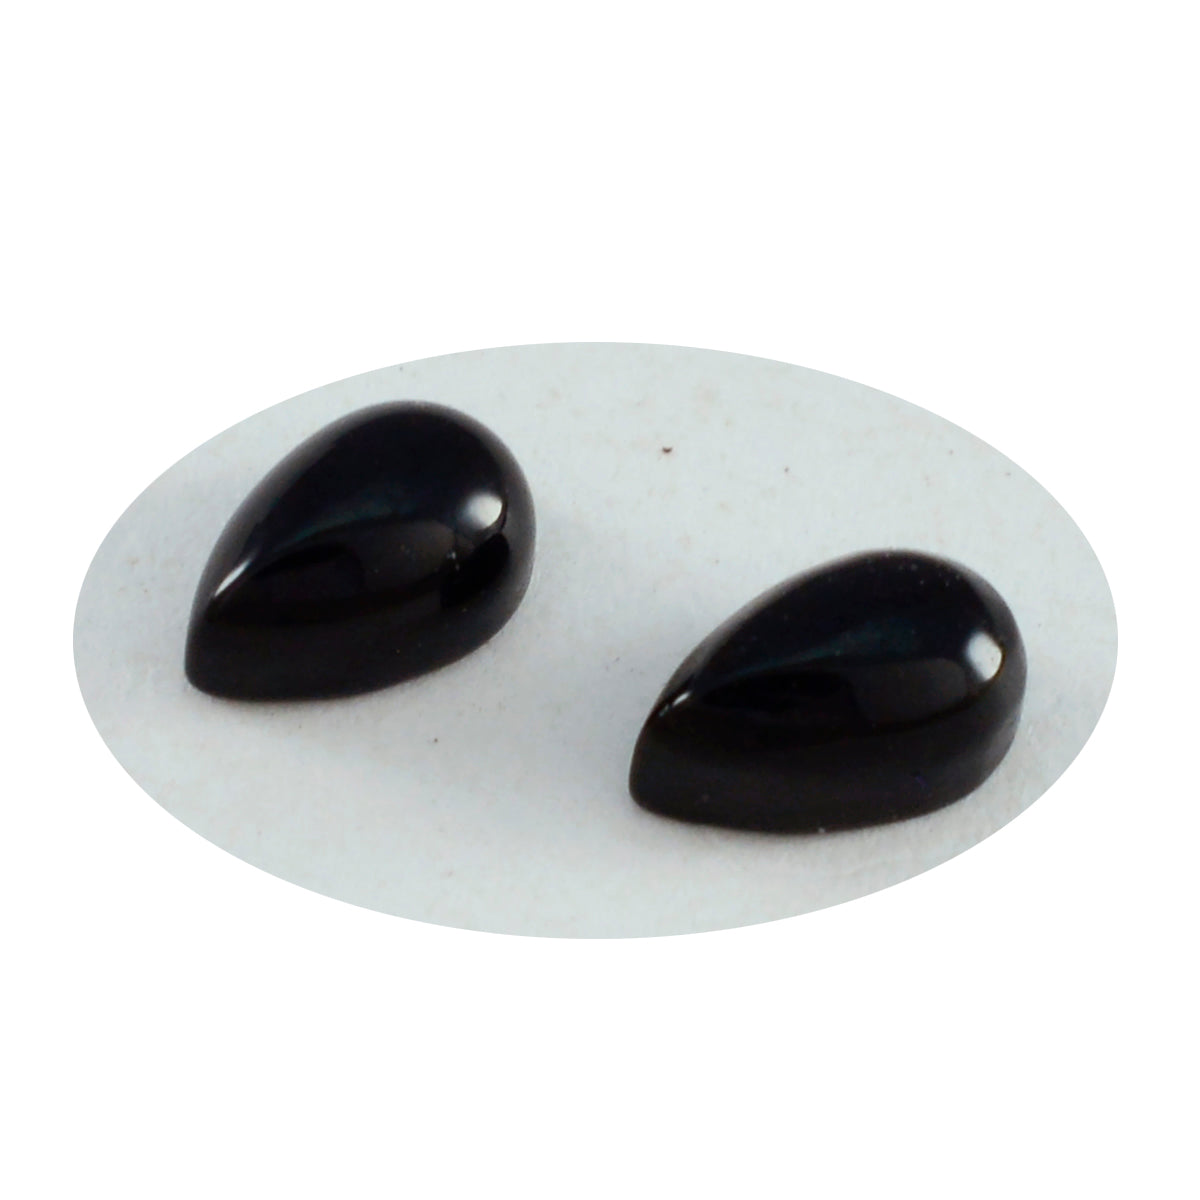 Riyogems 1pc cabochon onyx noir 6x9 mm forme de poire beauté qualité pierre précieuse en vrac